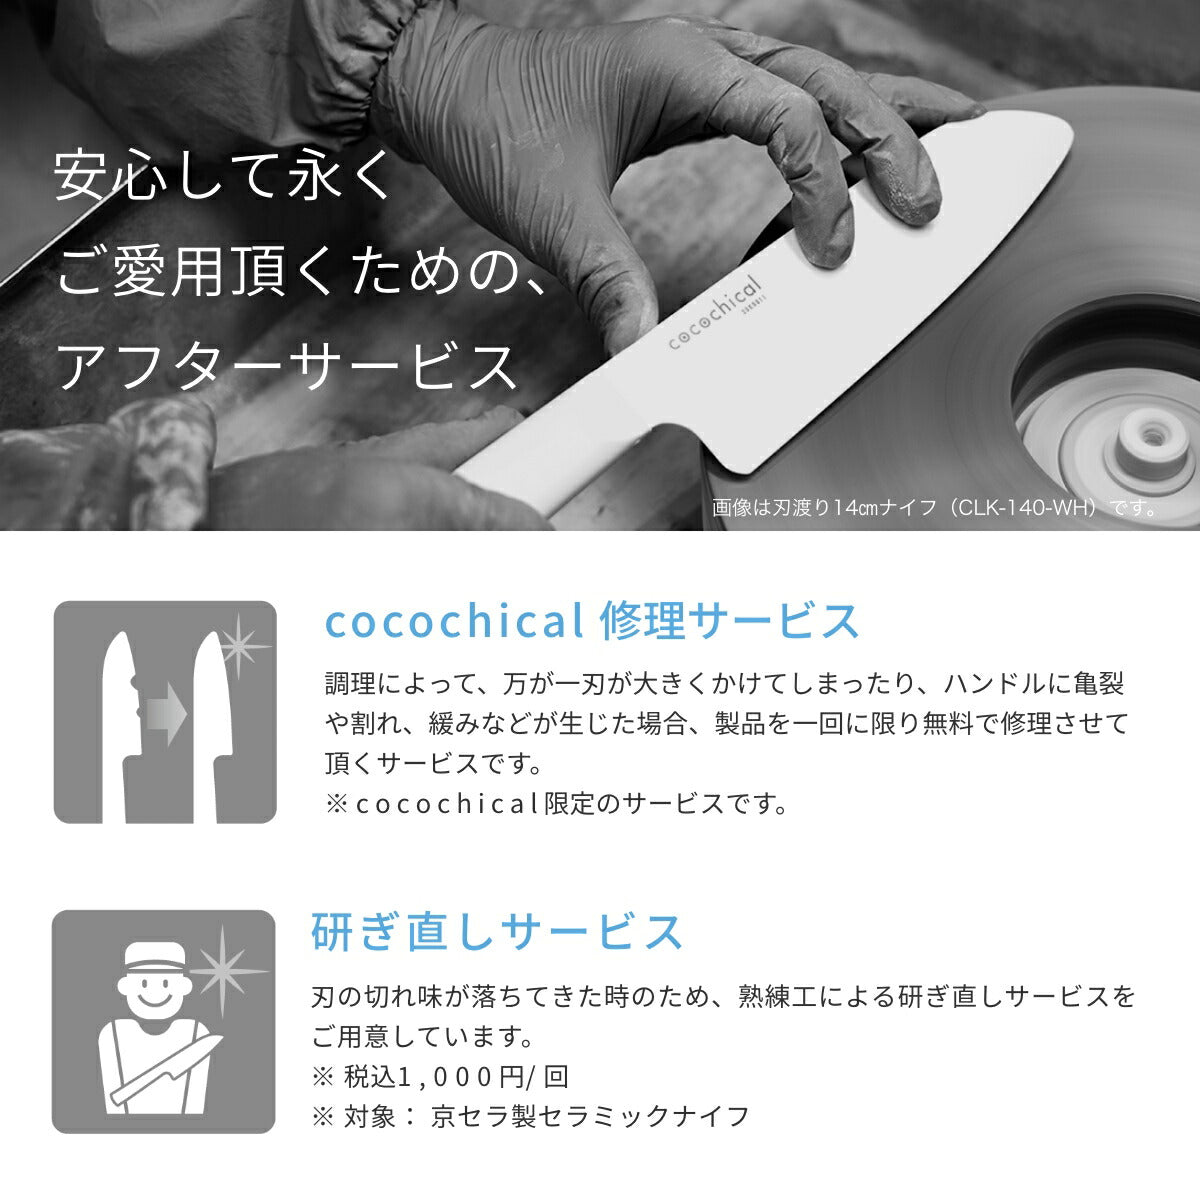 京セラ】cocochical(ココチカル) ギフトセット – 京セラキッチン 